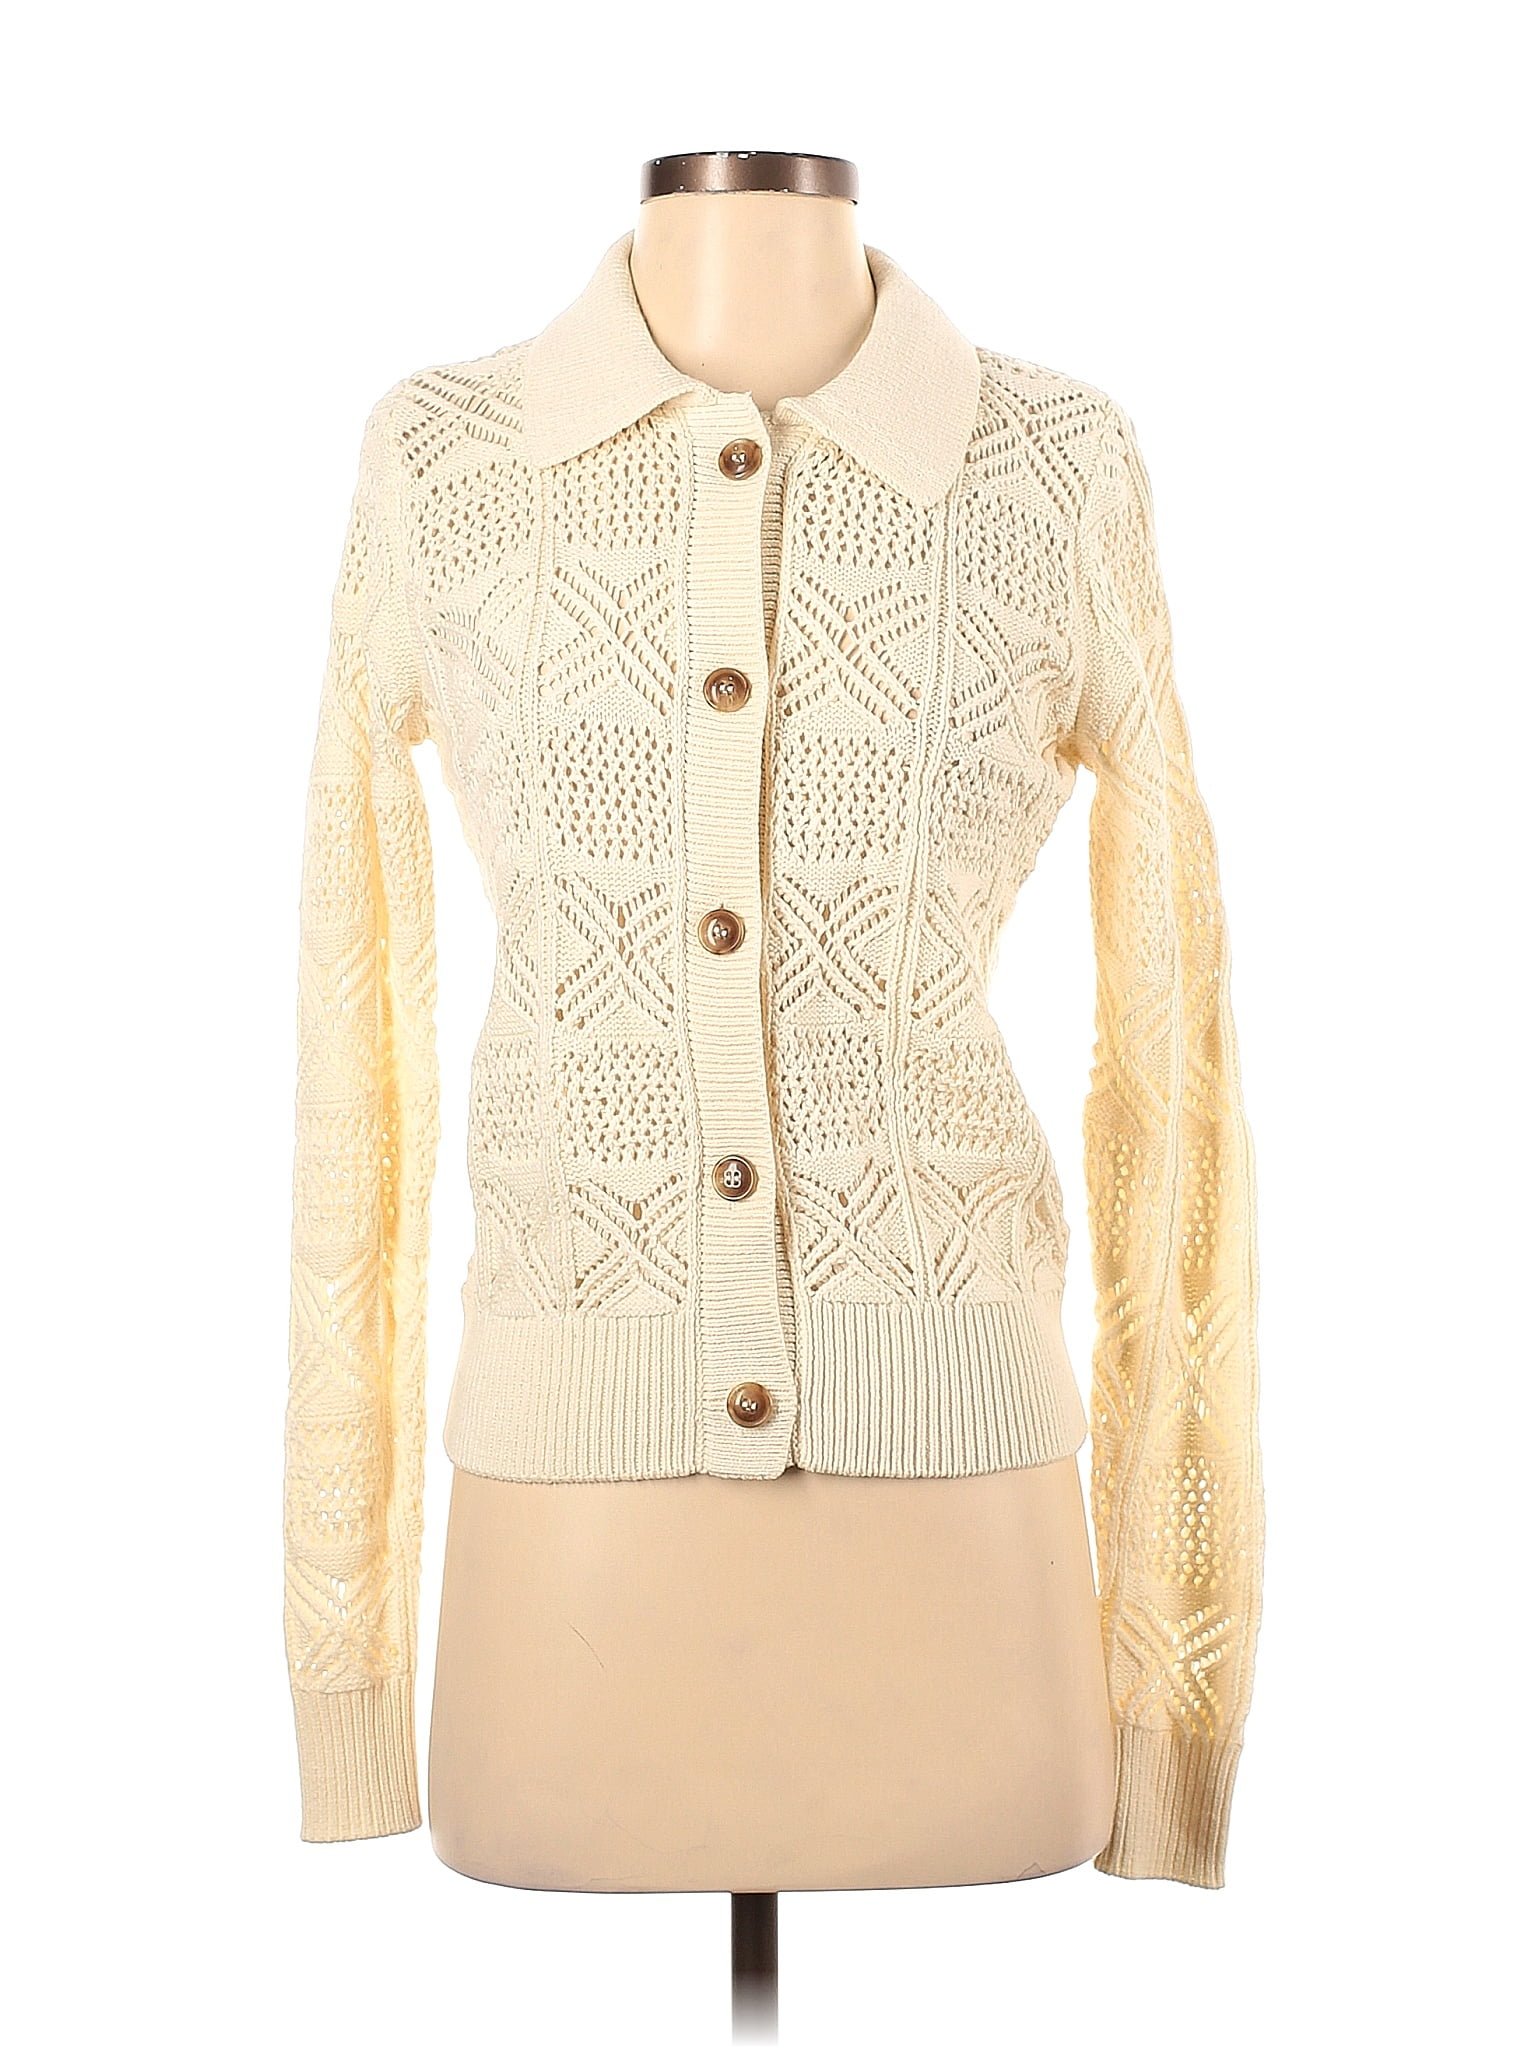 Rachel Zoe Color Block Solid Ivory Cardigan Size XS - 81% off | thredUP